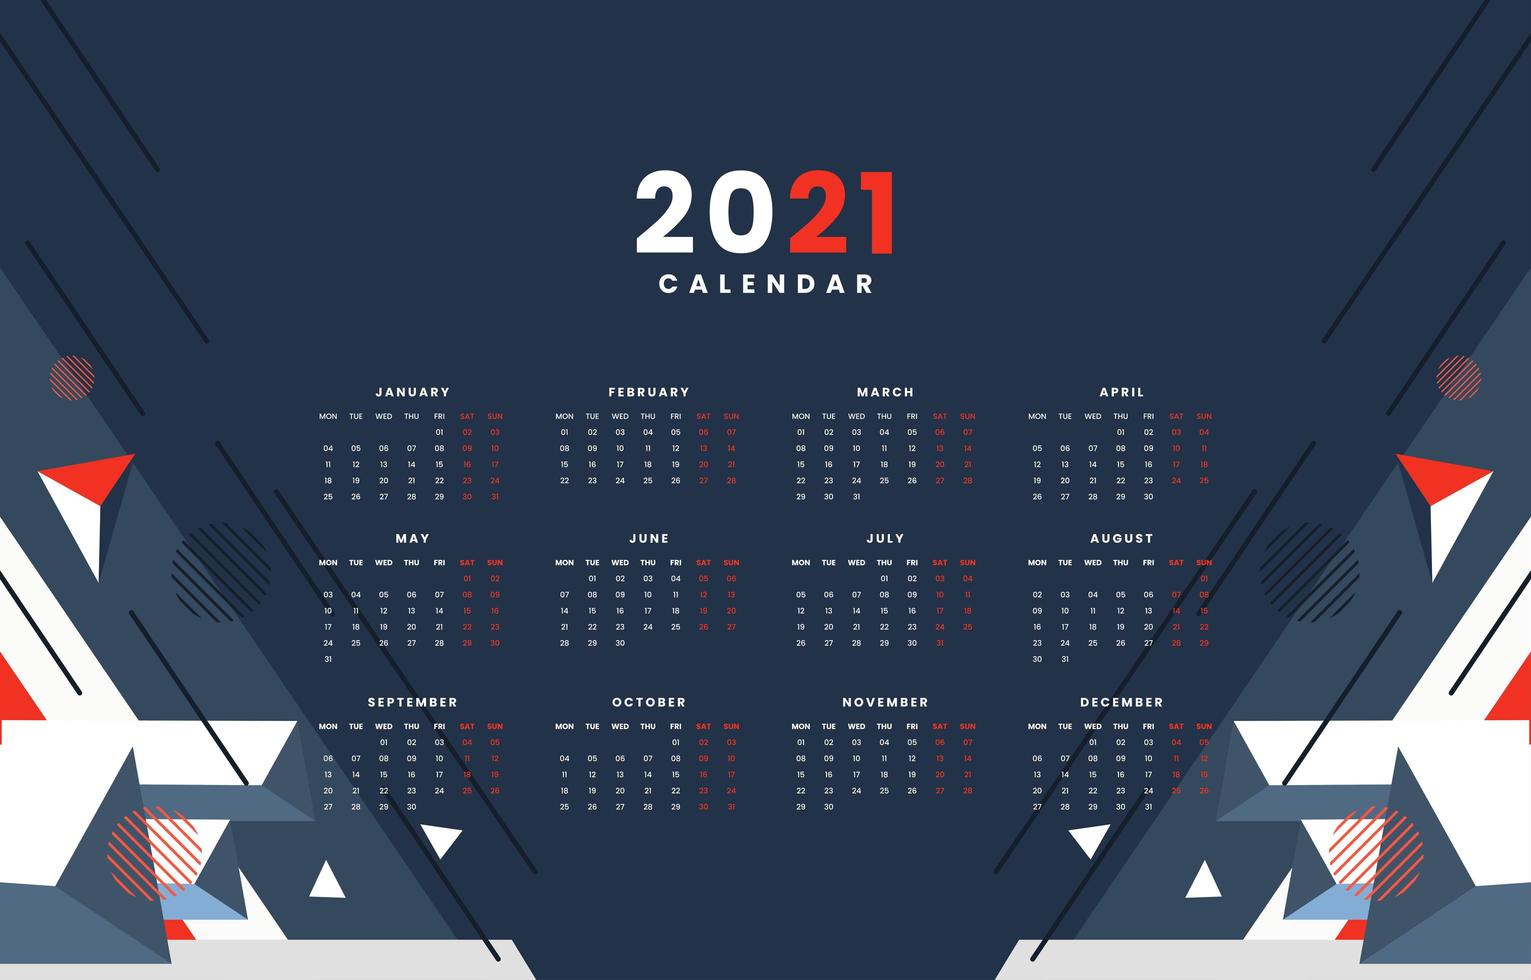 concetto di calendario 2021 astratto techno geometrico vettore